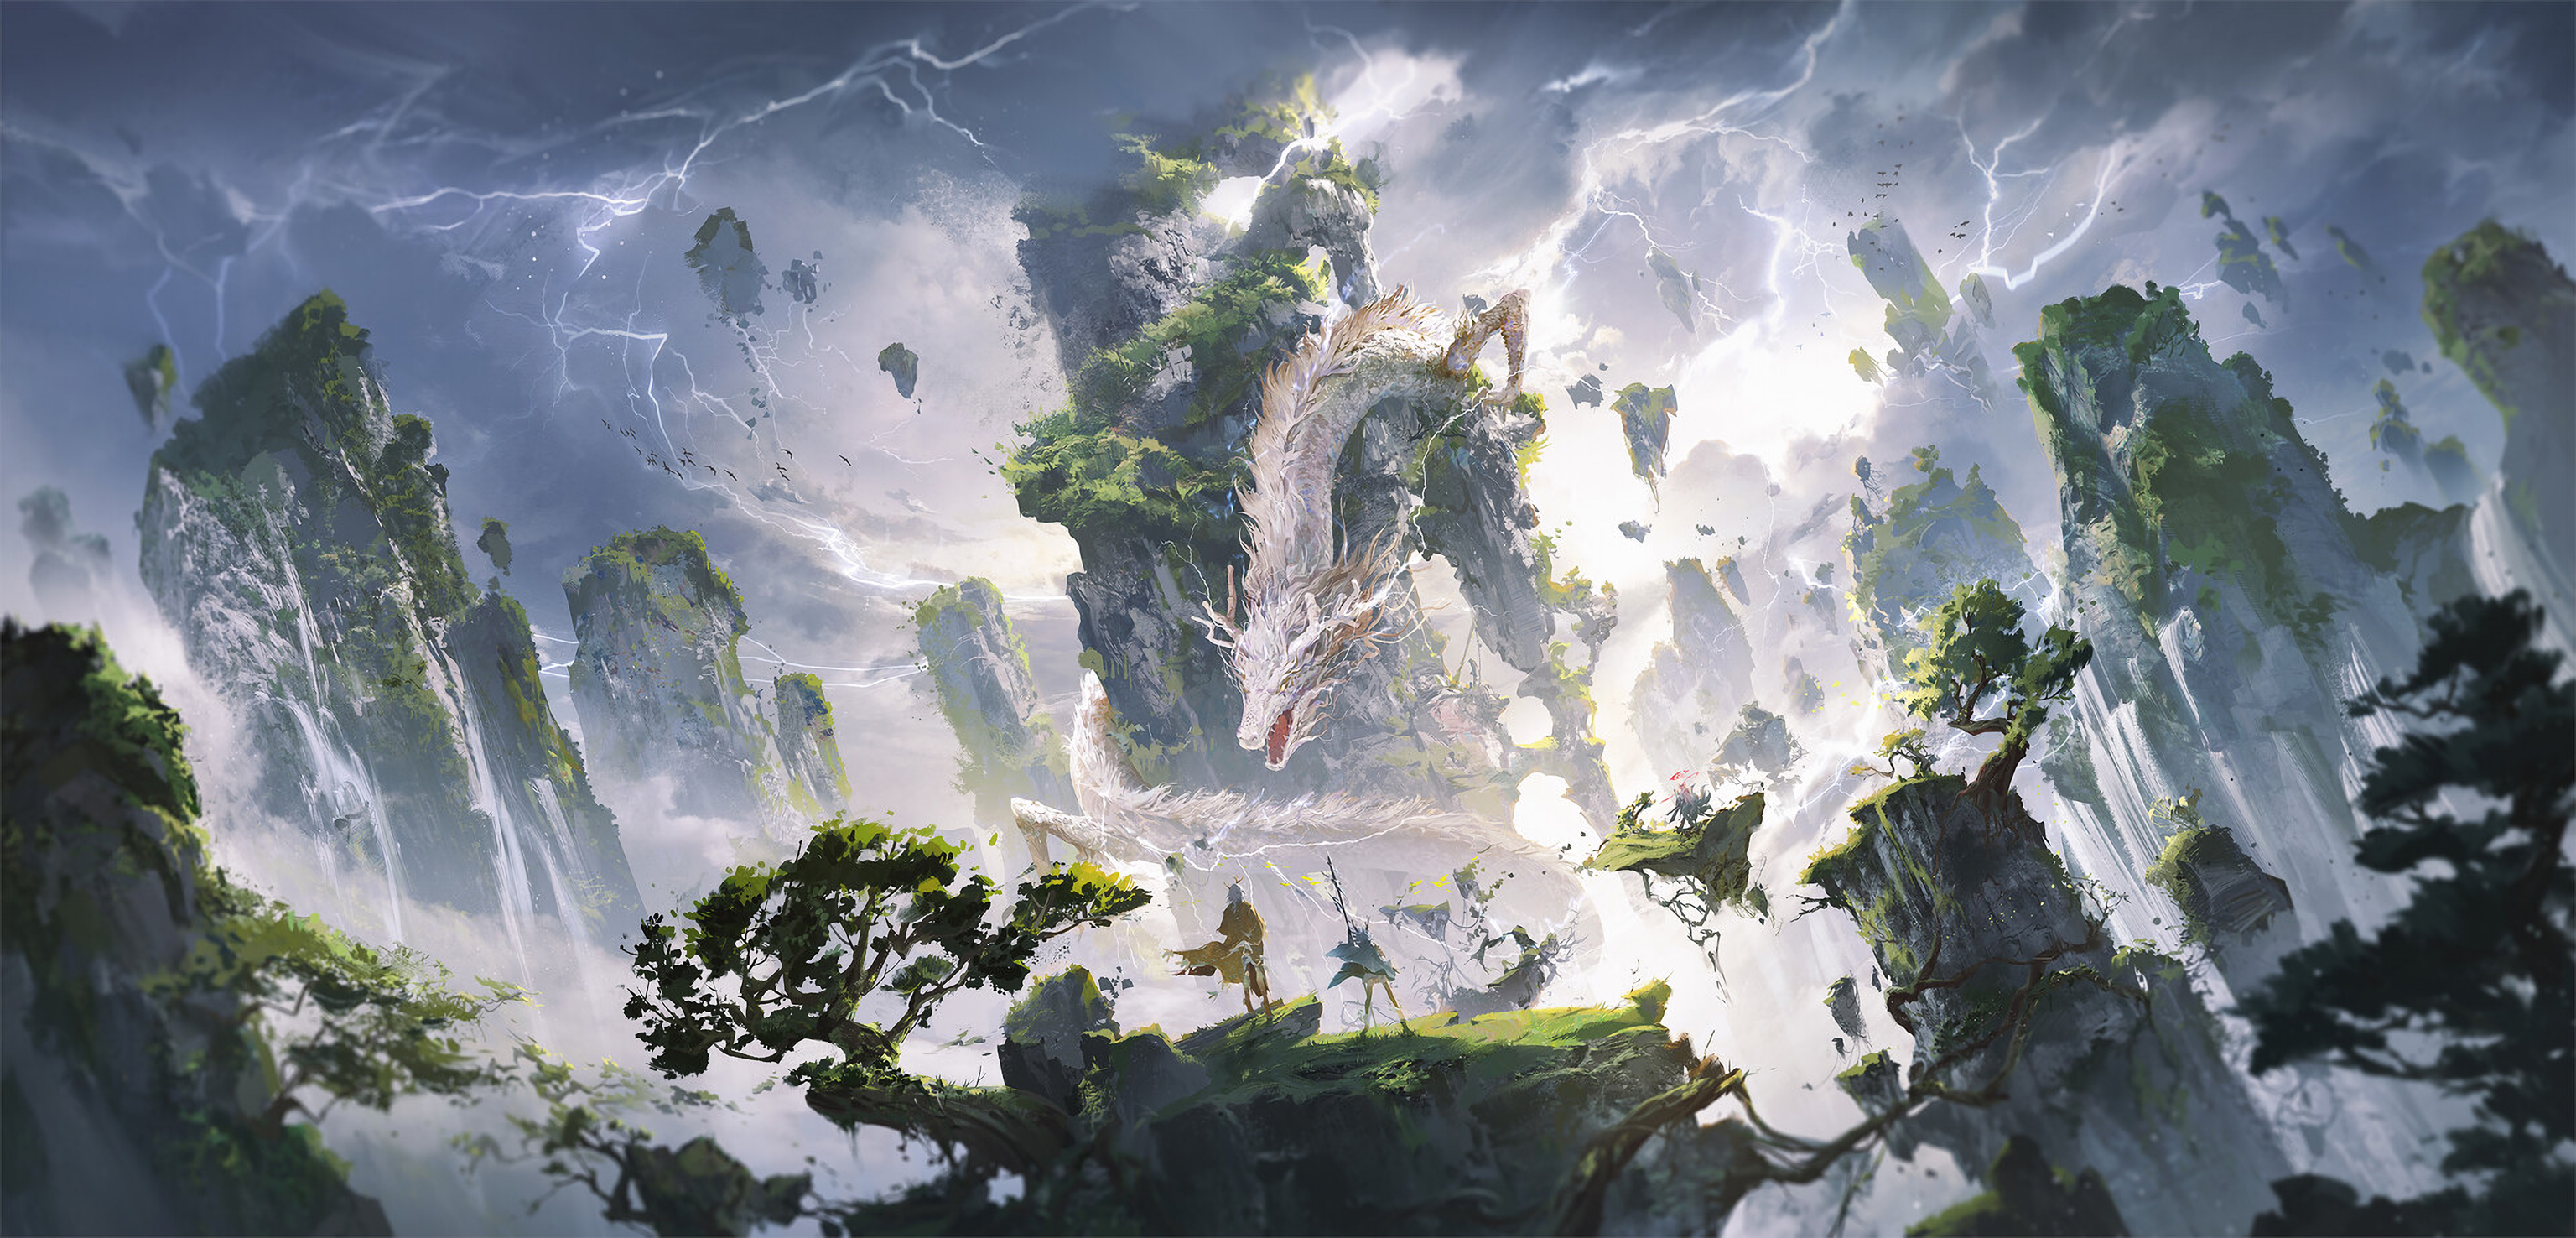 General 3072x1476 Ying Yi illustration dragon mountains pine trees lightning